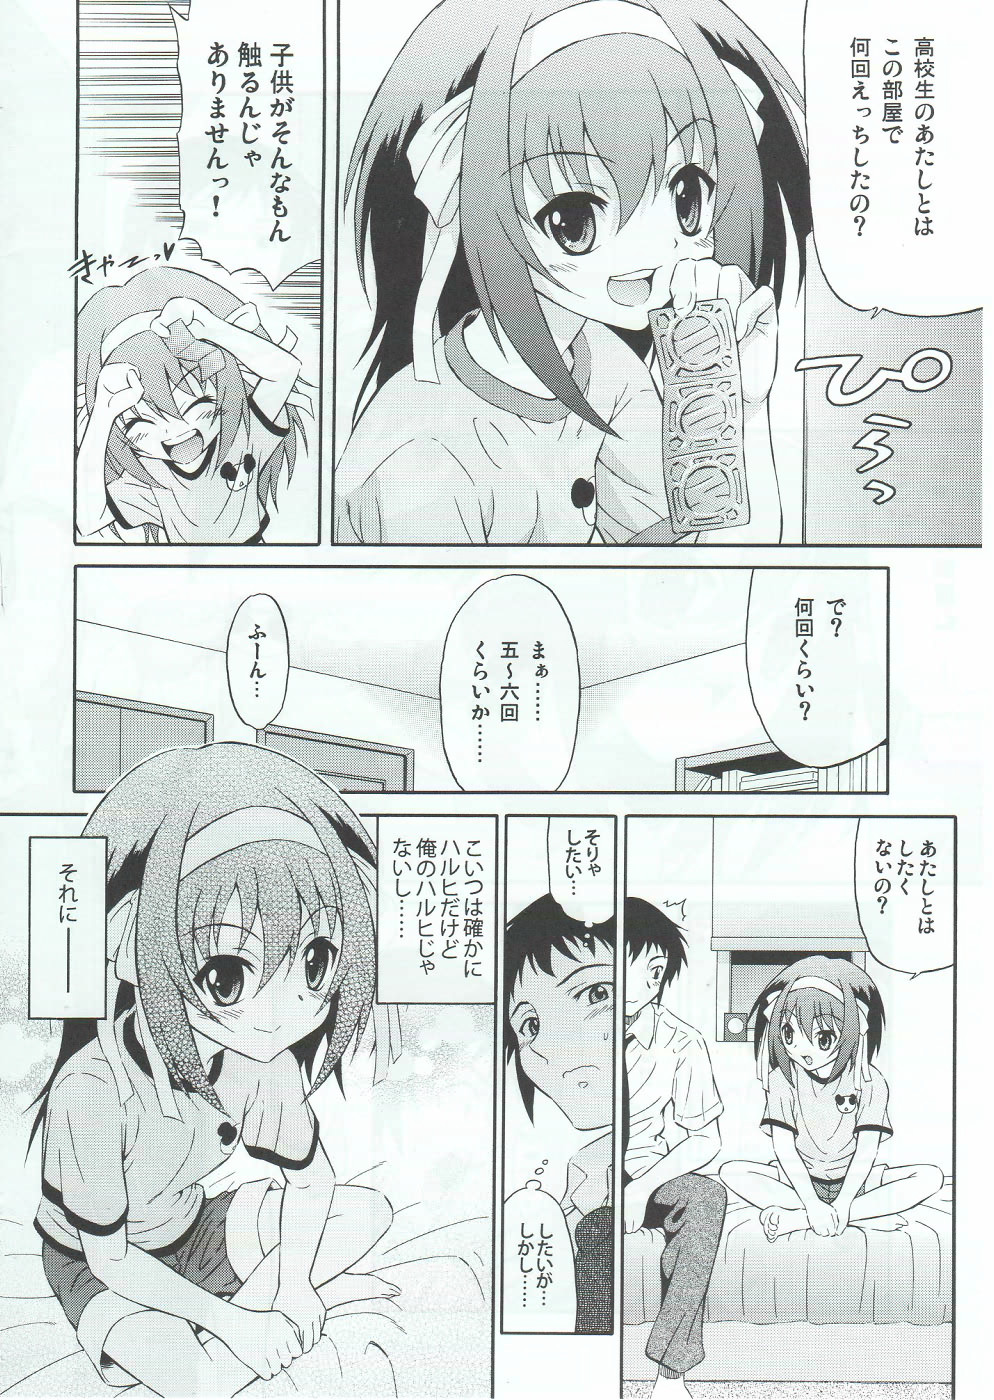 (SC46) [GUST (Harukaze Soyogu)] Sasa no Ha Haruhi to Kouichi Kyon. (Suzumiya Haruhi no Yuuutsu [The Melancholy of Haruhi Suzumiya]) page 5 full